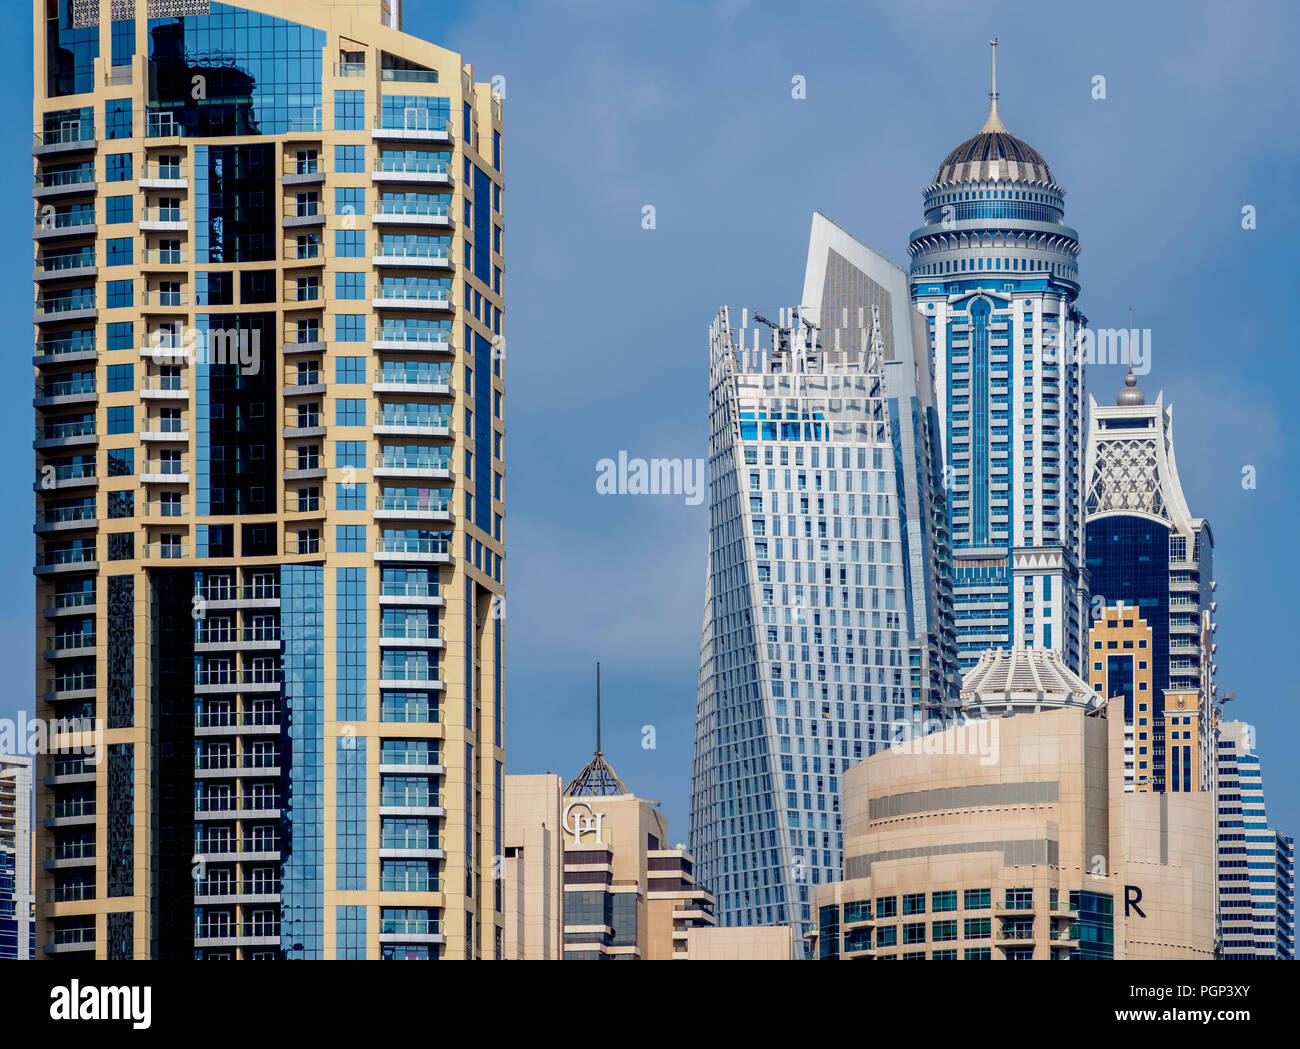 Dubai Marina, Dubai, United Arab Emirates Stock Photo